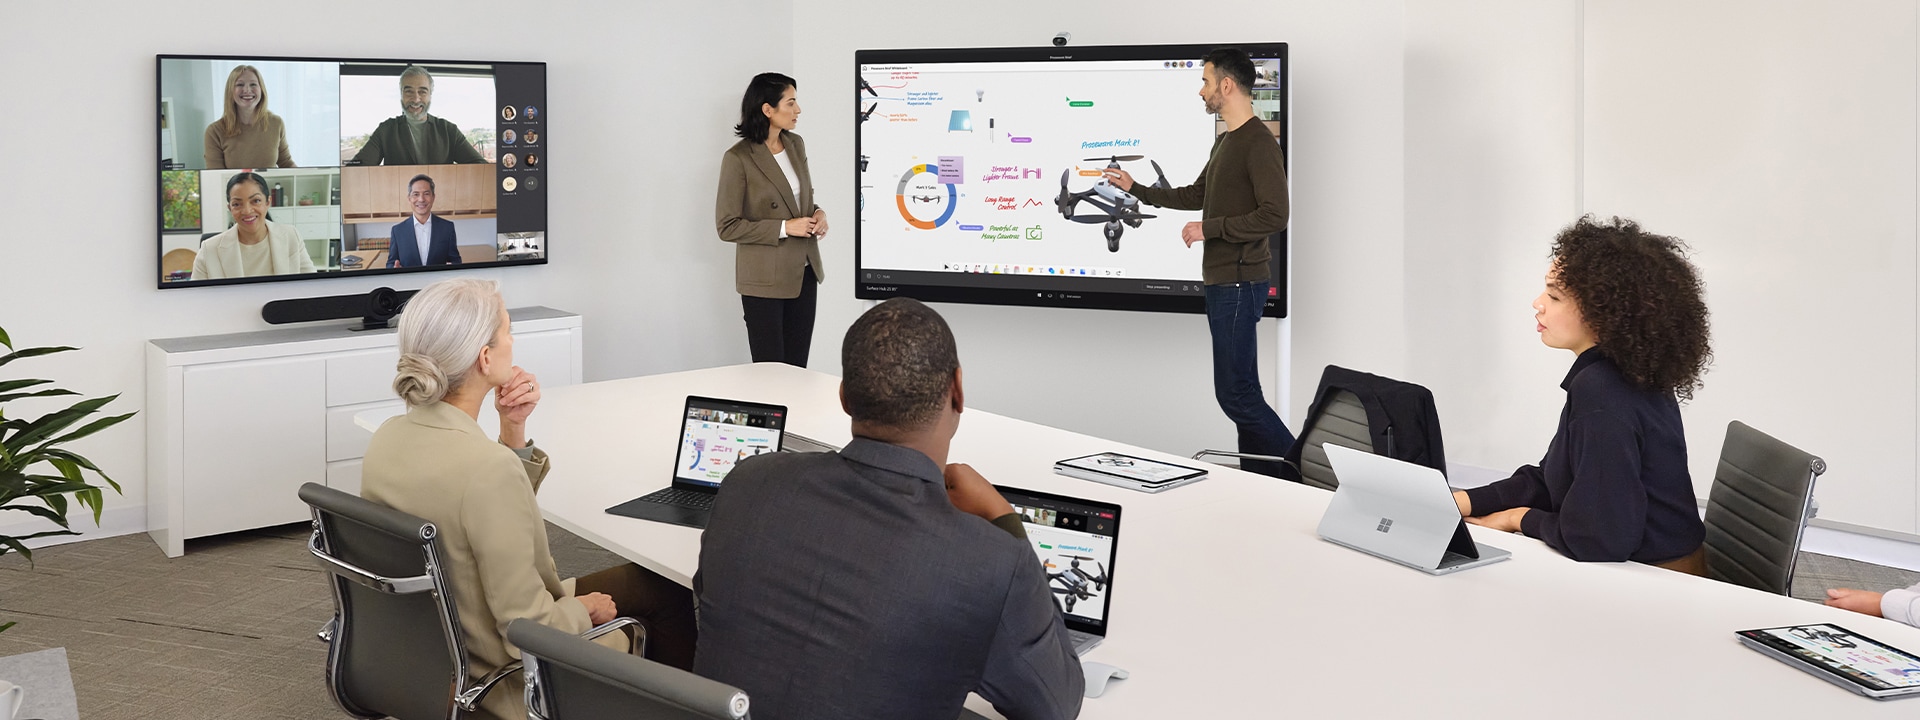 Két munkatárs együttműködik a Surface Hub 2S segítségével, miközben egy közeli asztalon lévő Surface laptopon virtuális Teams-megbeszélést vezetnek